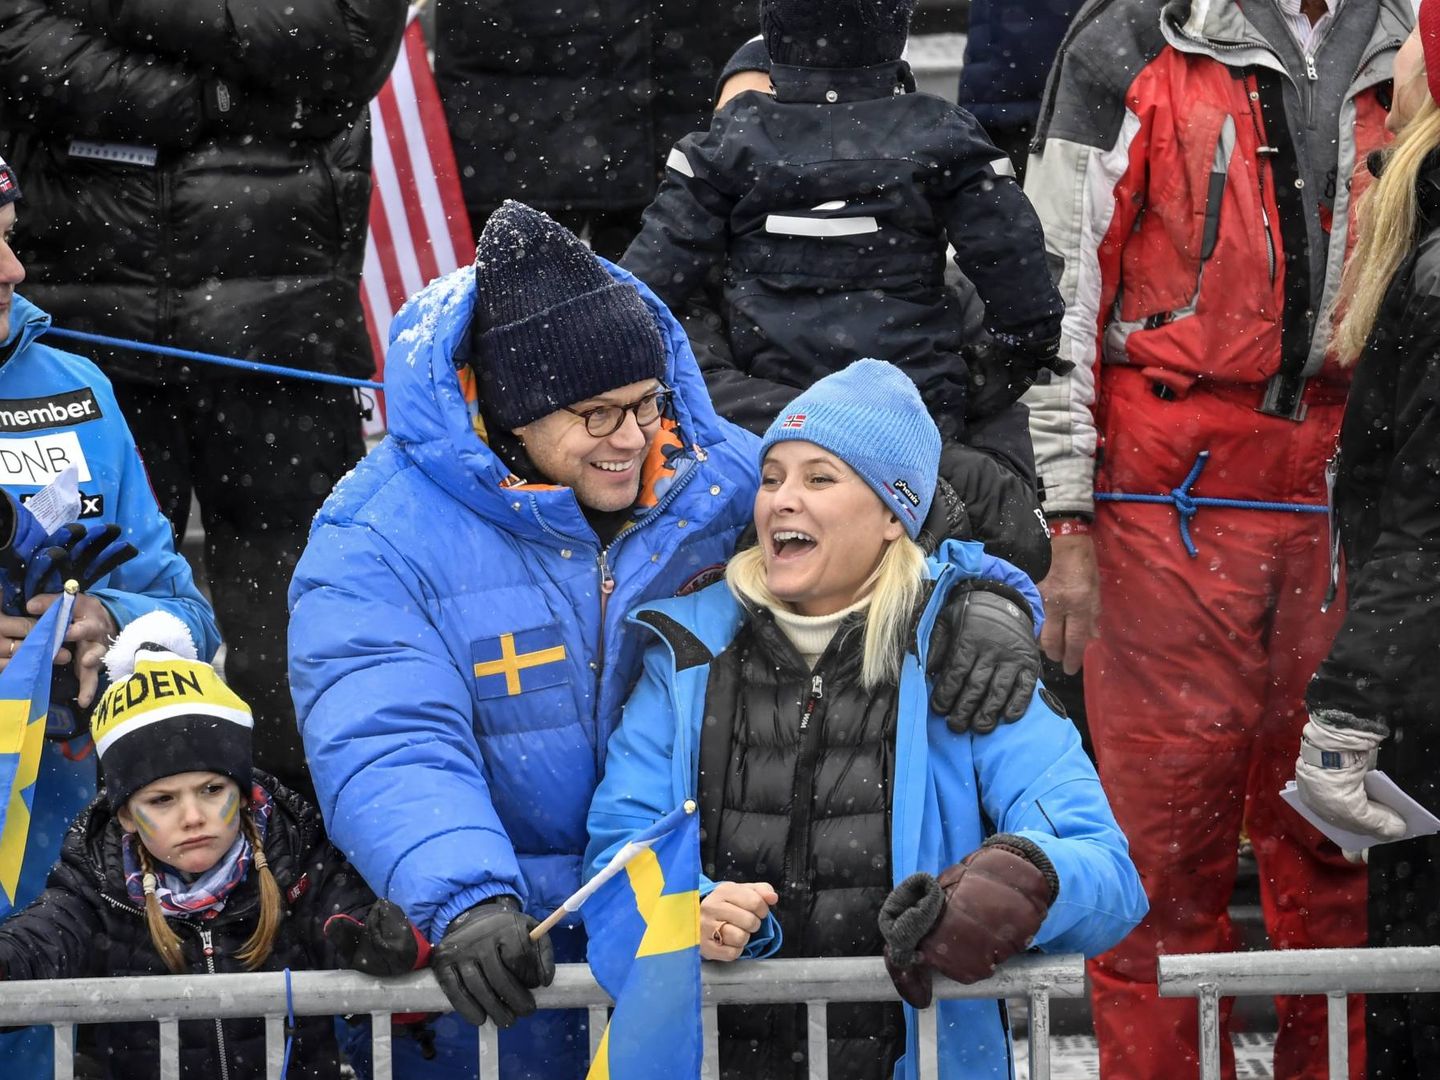 Mette-Marit y Daniel Westling durante los campeonatos de esquí alpino en Suecia. (Cordon Press)